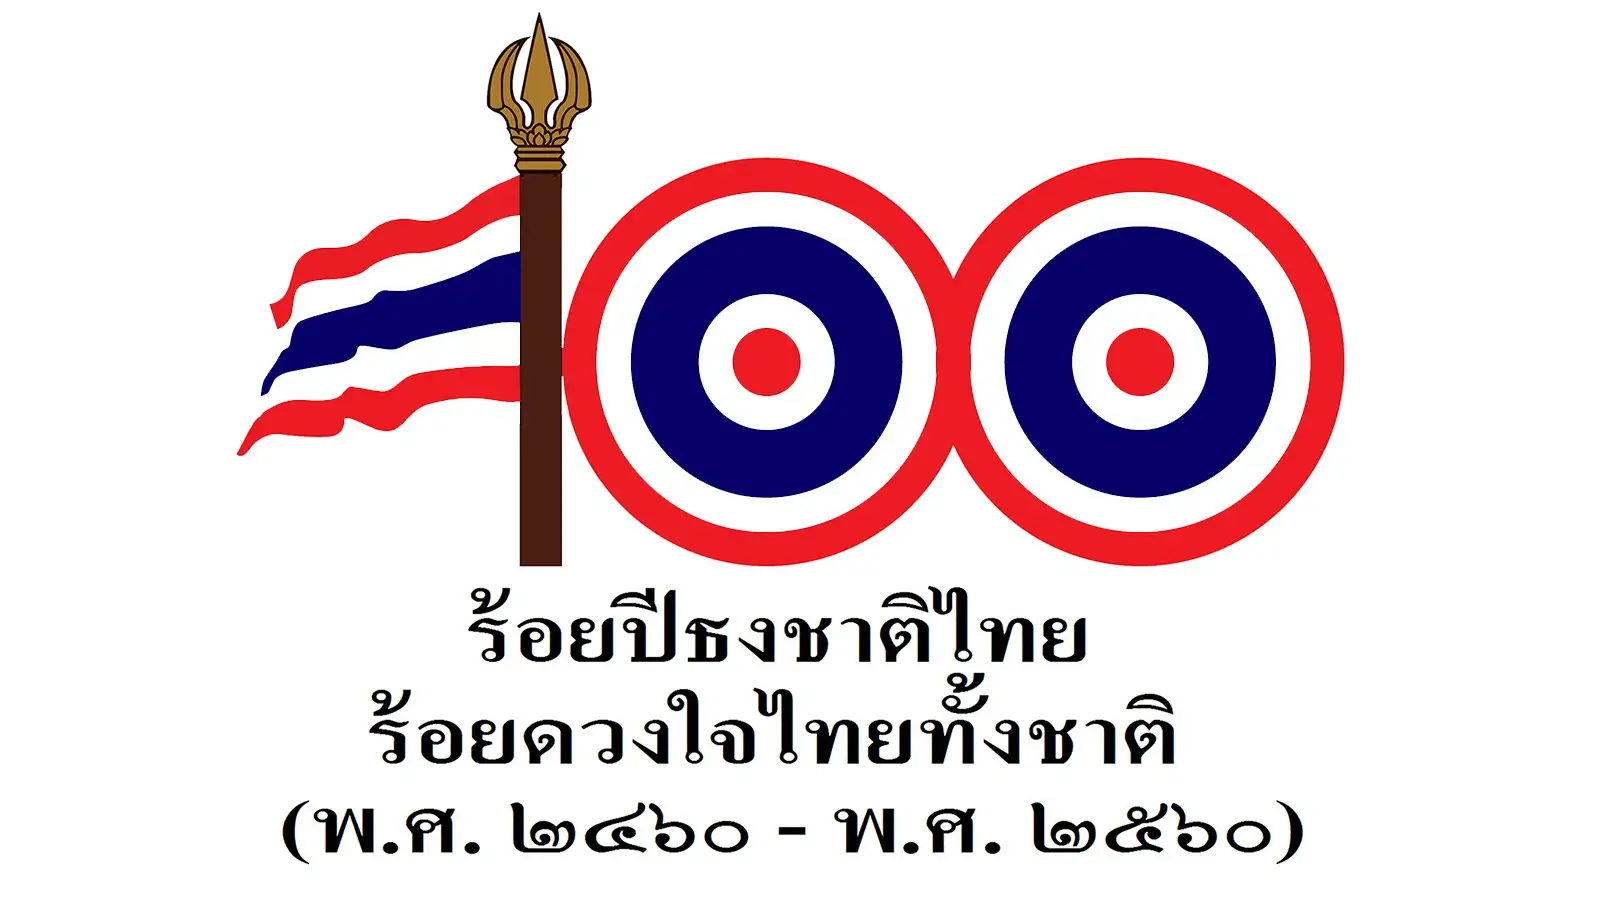 ฉลองครบรอบ 100ปี กำหนดวันที่ 28 กันยายนเป็นวันพระราชทานธงชาติไทย